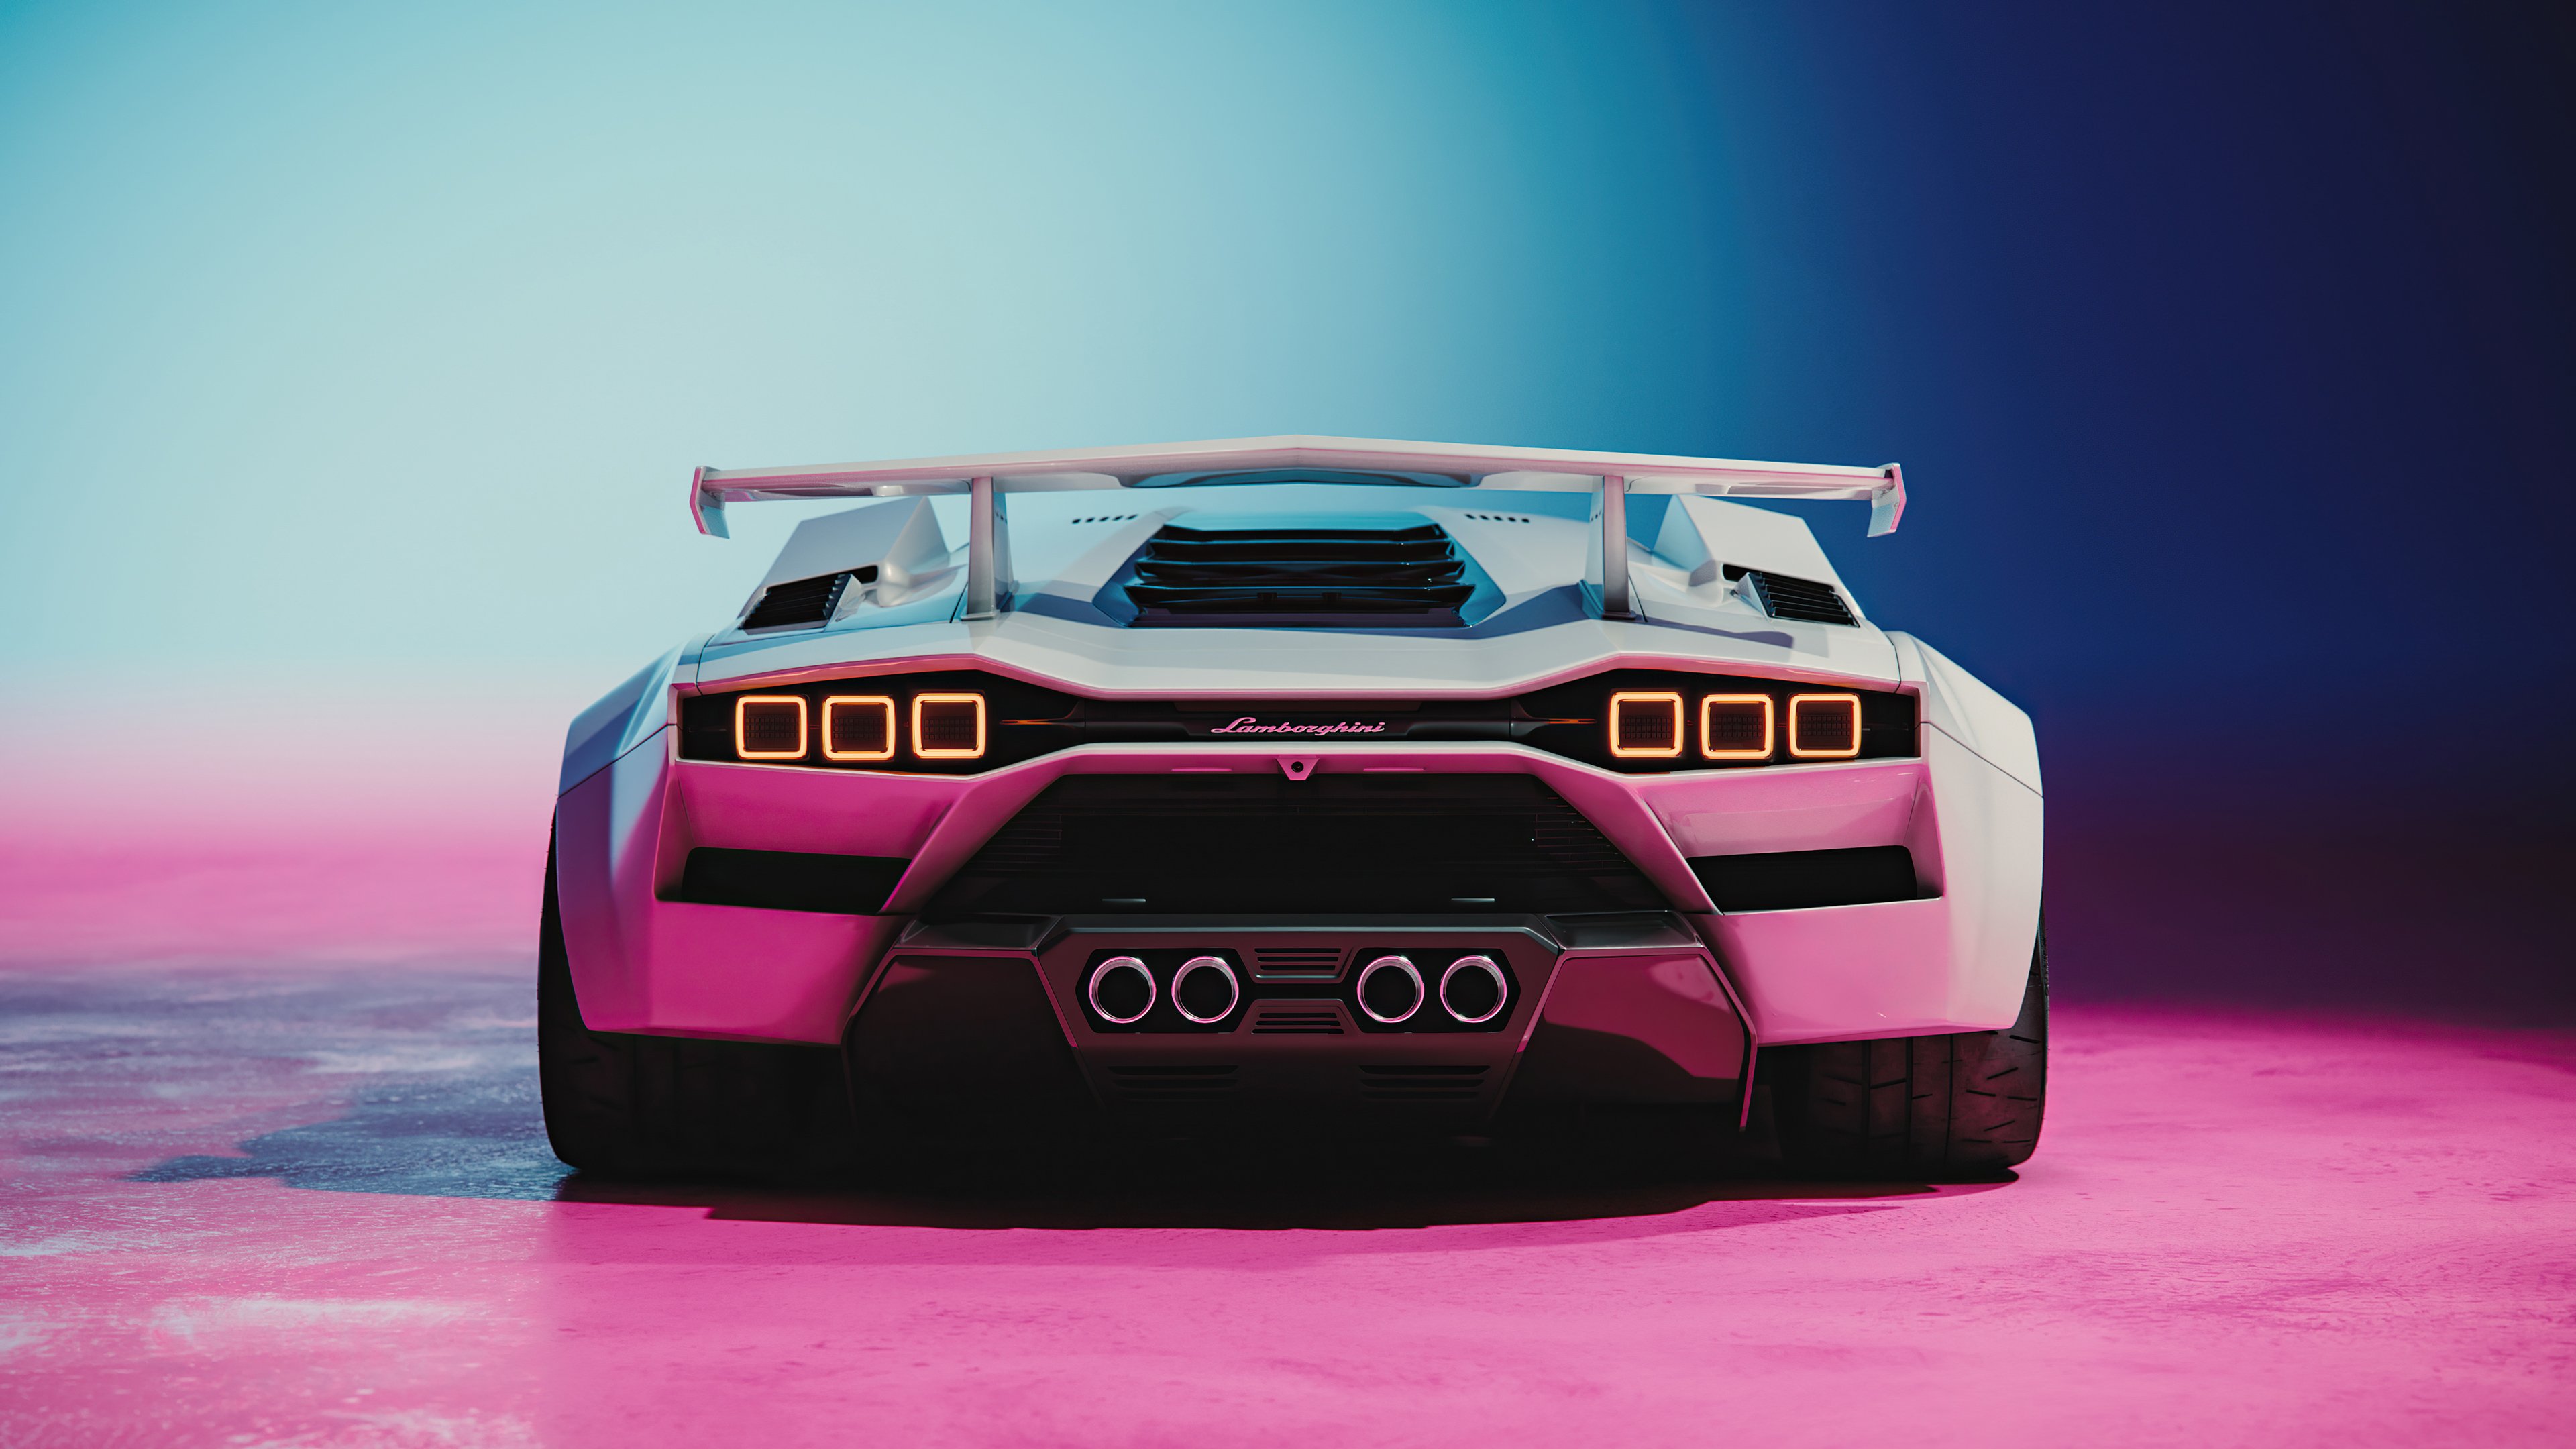 Fondos de pantalla Lamborghini Countach concept de atrás